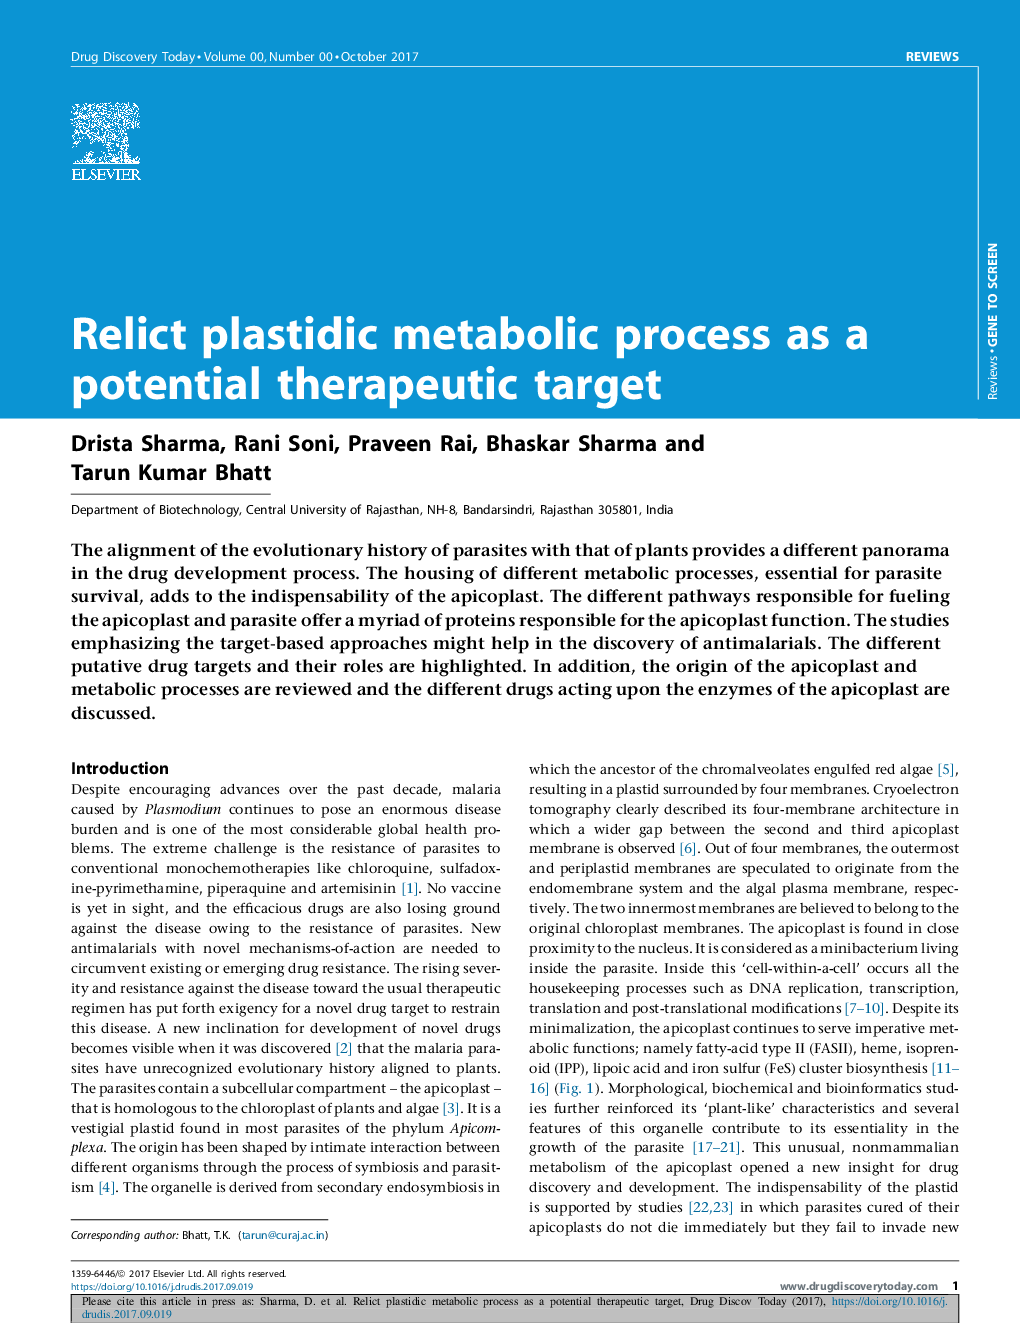 فرآیند متابولیک پلاستیدیک را به عنوان یک هدف بالقوه درمانی تحریک می کند 